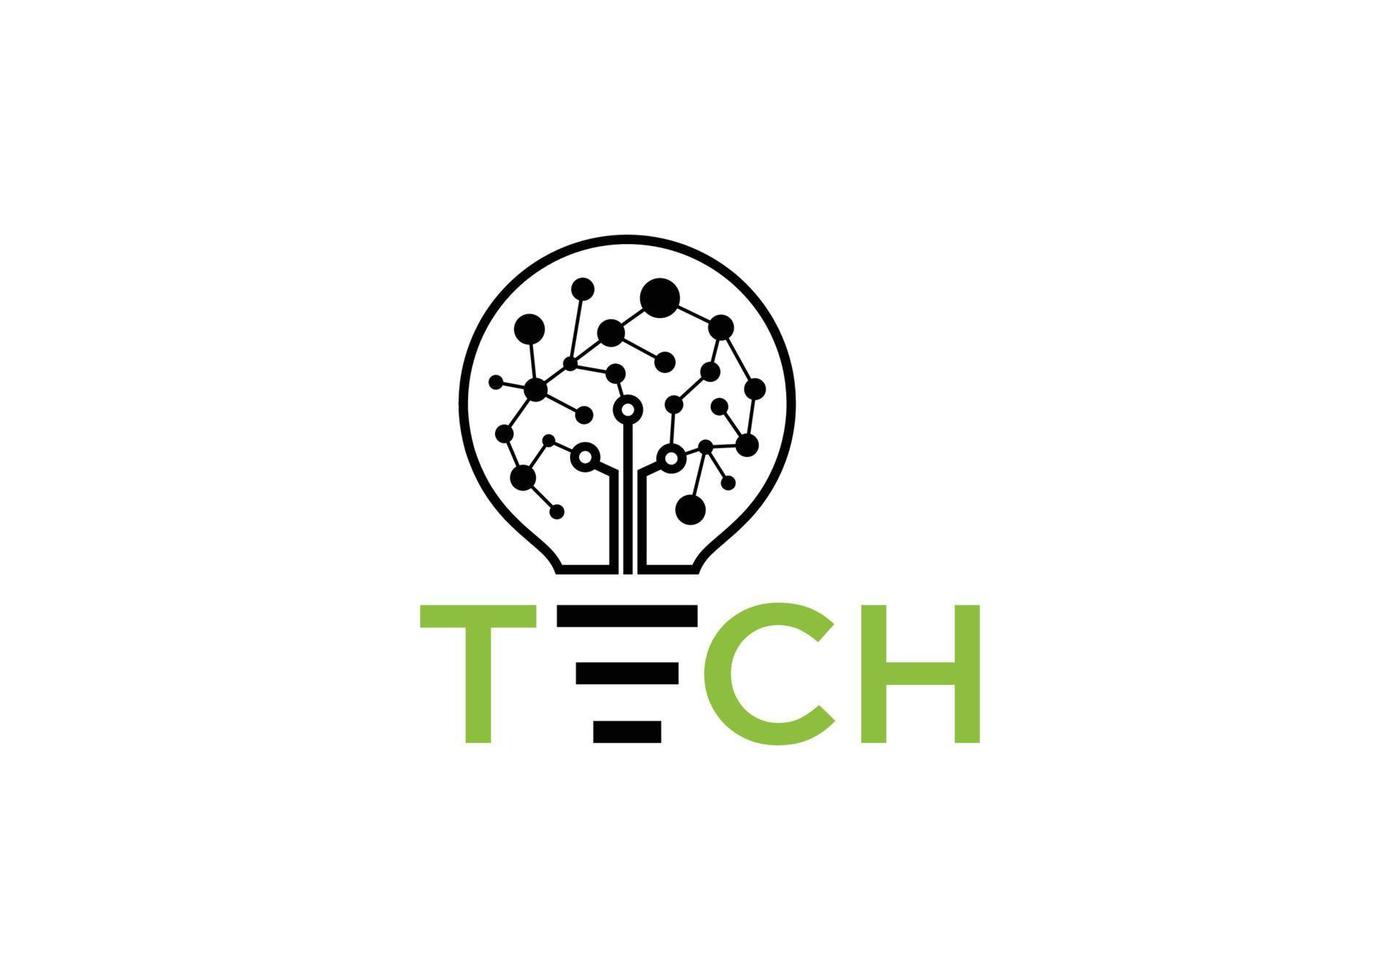 tech data bulb idea logo icon symbol inspiration template vector